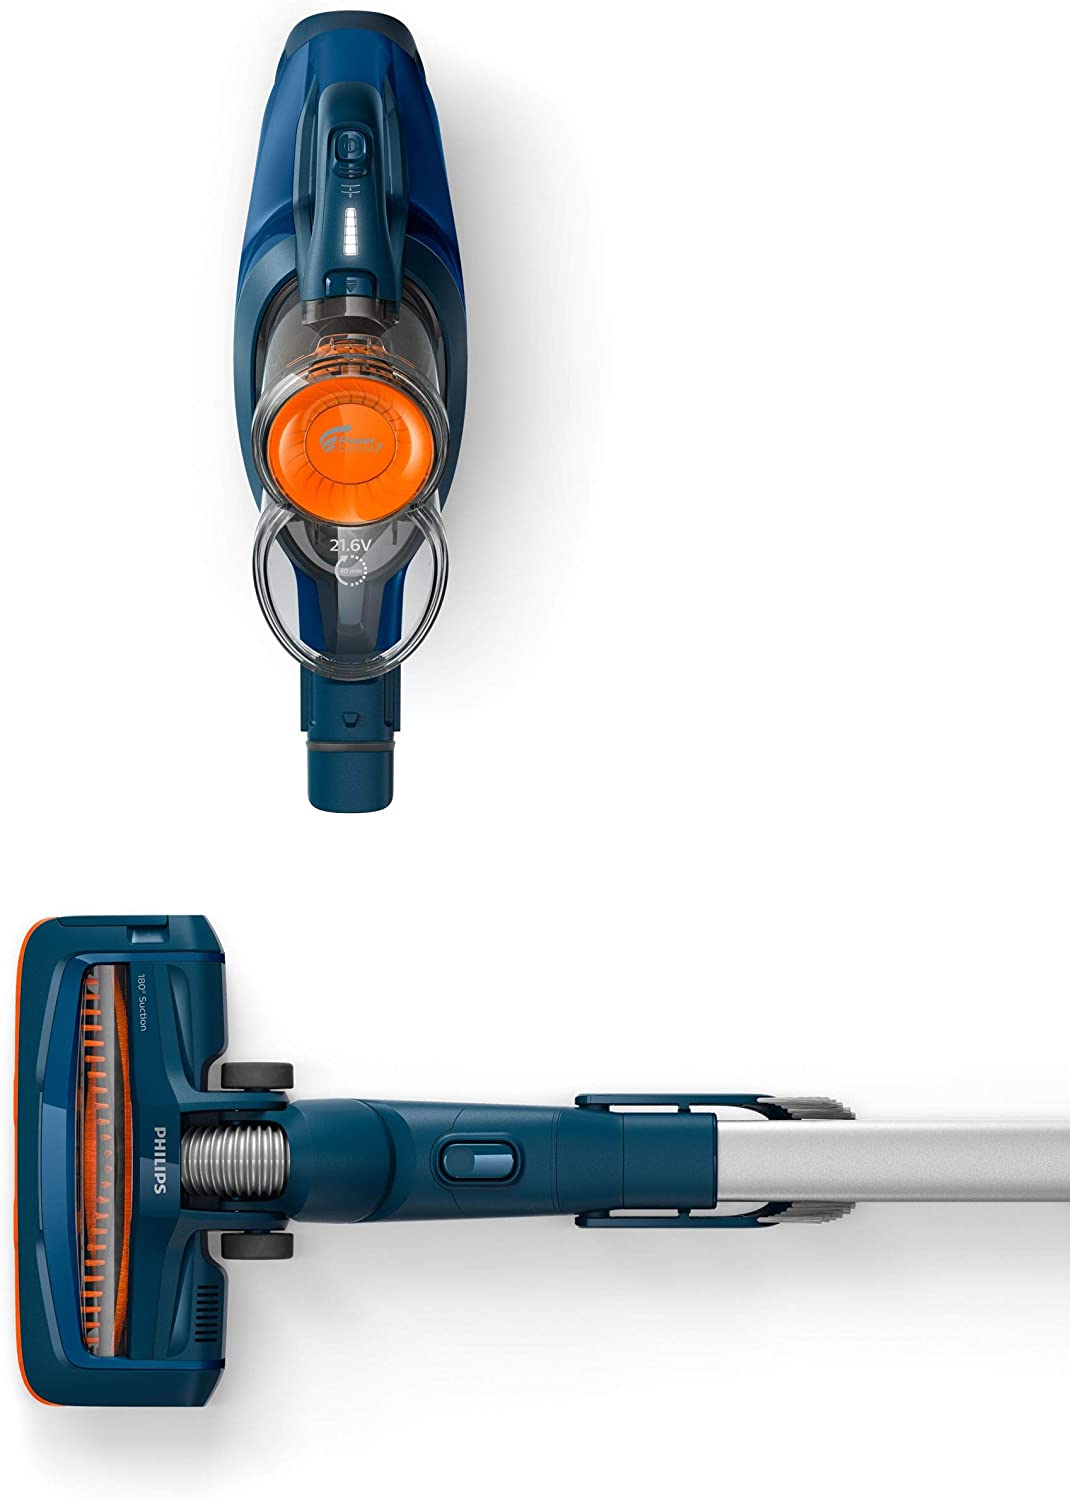 جارو شارژی فیلیپس مدل Philips SpeedPro Cordless Stick vacuum cleaner - ارسال 10 الی 15 روز کاری